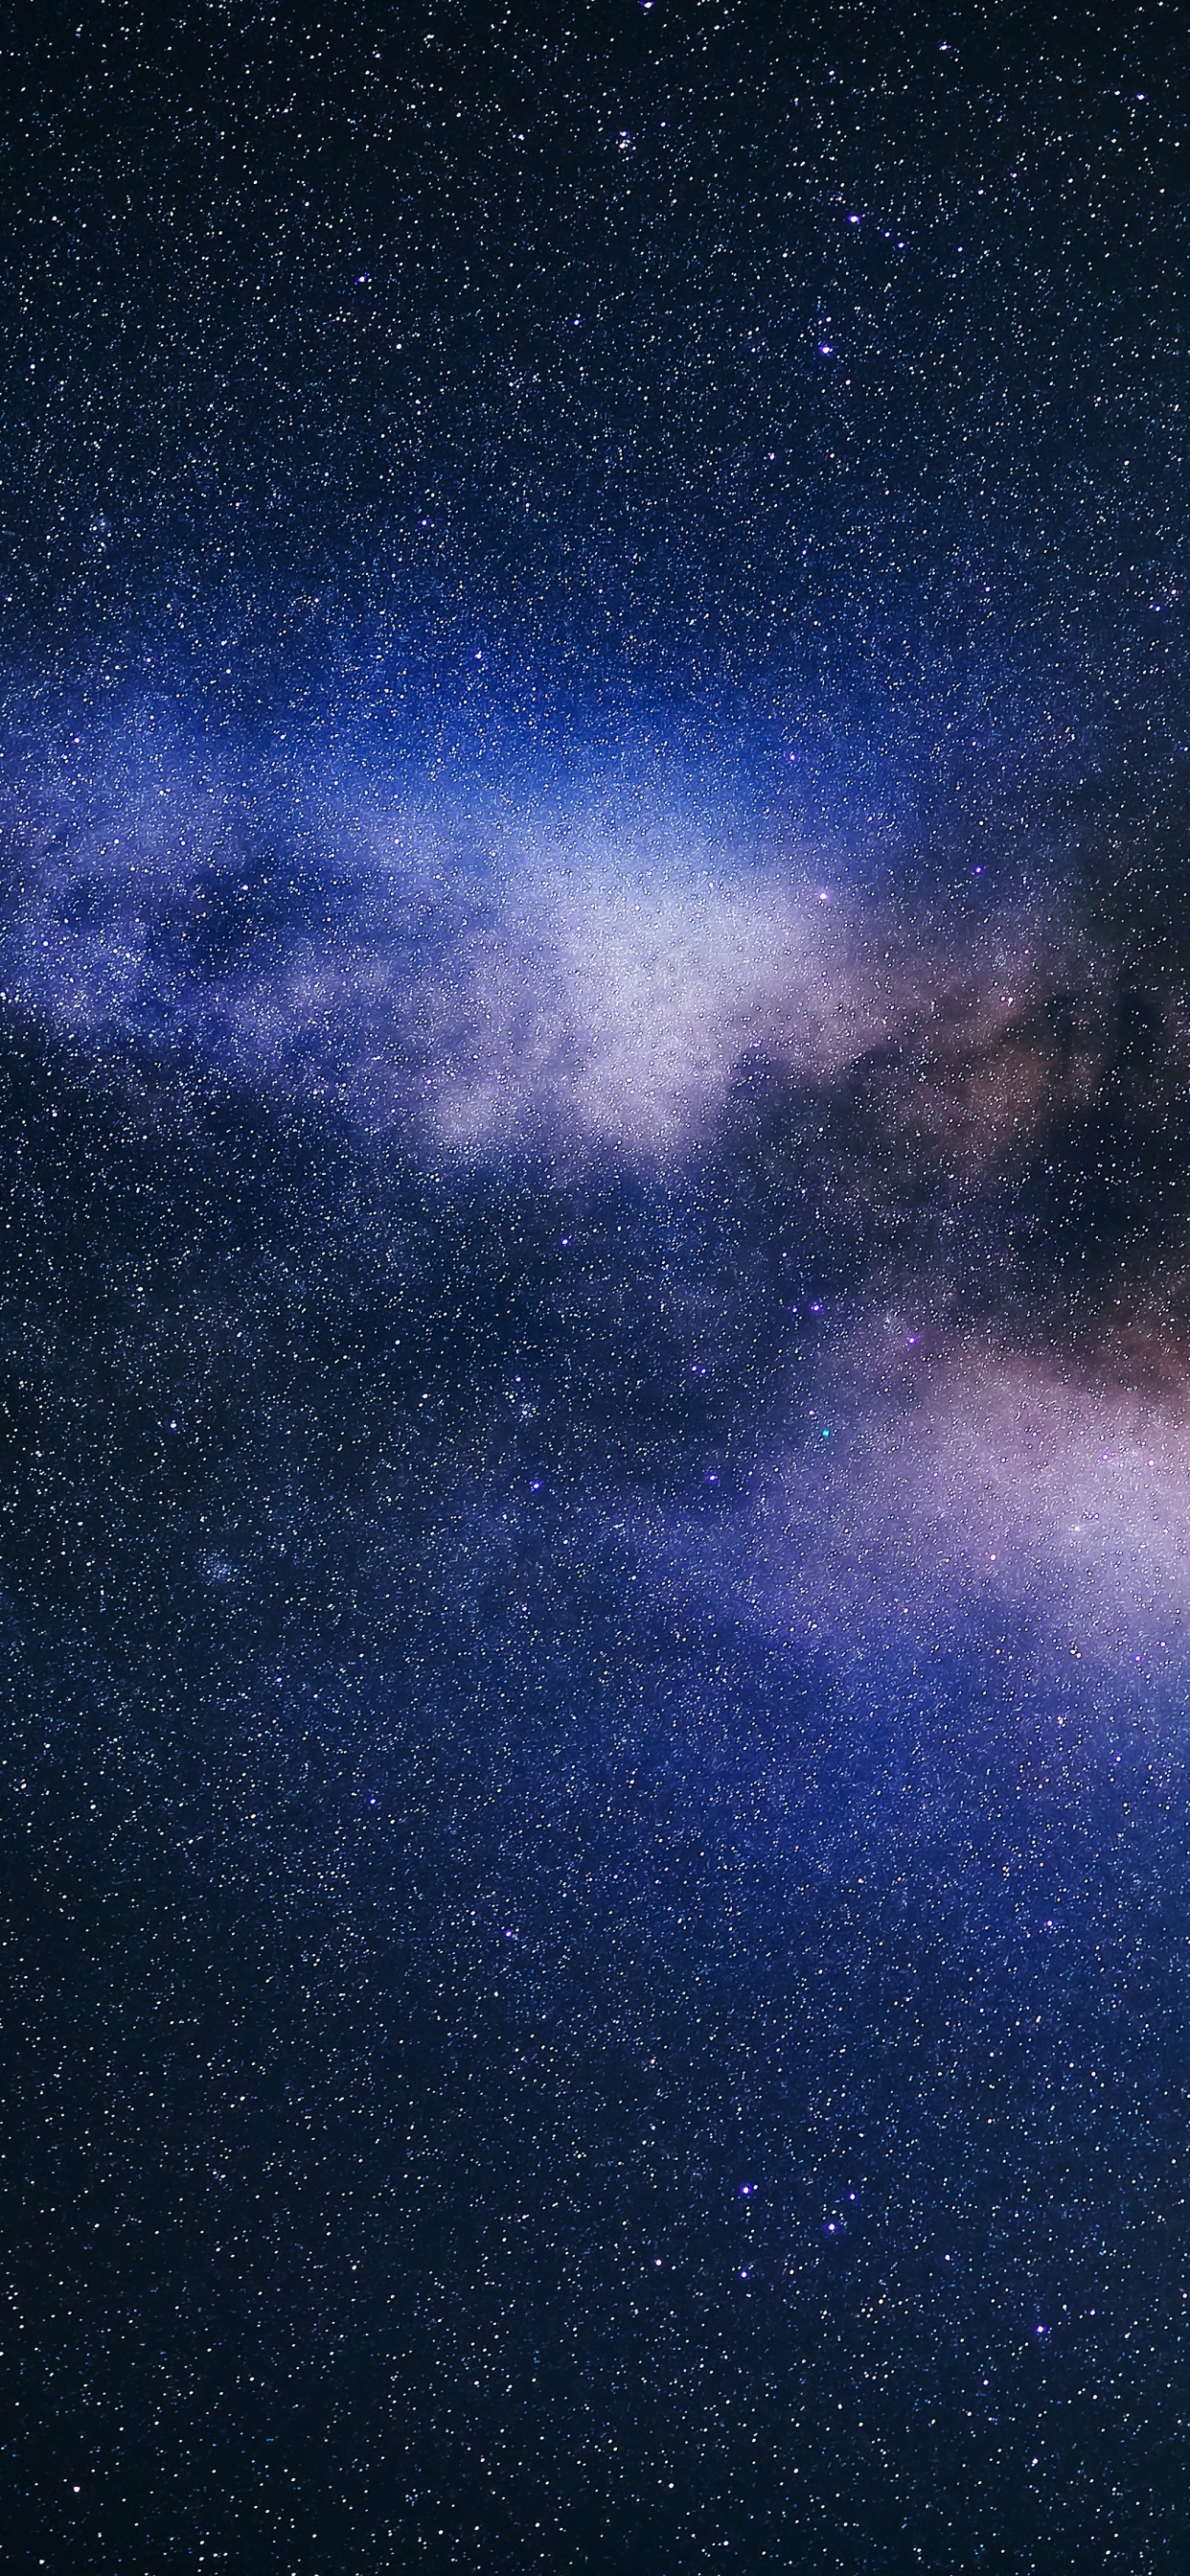 Hình nền đường Ngân Hà là một tác phẩm nghệ thuật đẹp mắt mà ai cũng nên thưởng thức. Từ đường cong quyến rũ của các ngôi sao cho đến những cơn gió thoảng qua mọi khoảng trống, hình nền này sẽ mang lại cho bạn cảm giác như đang phiêu lưu trong vũ trụ.